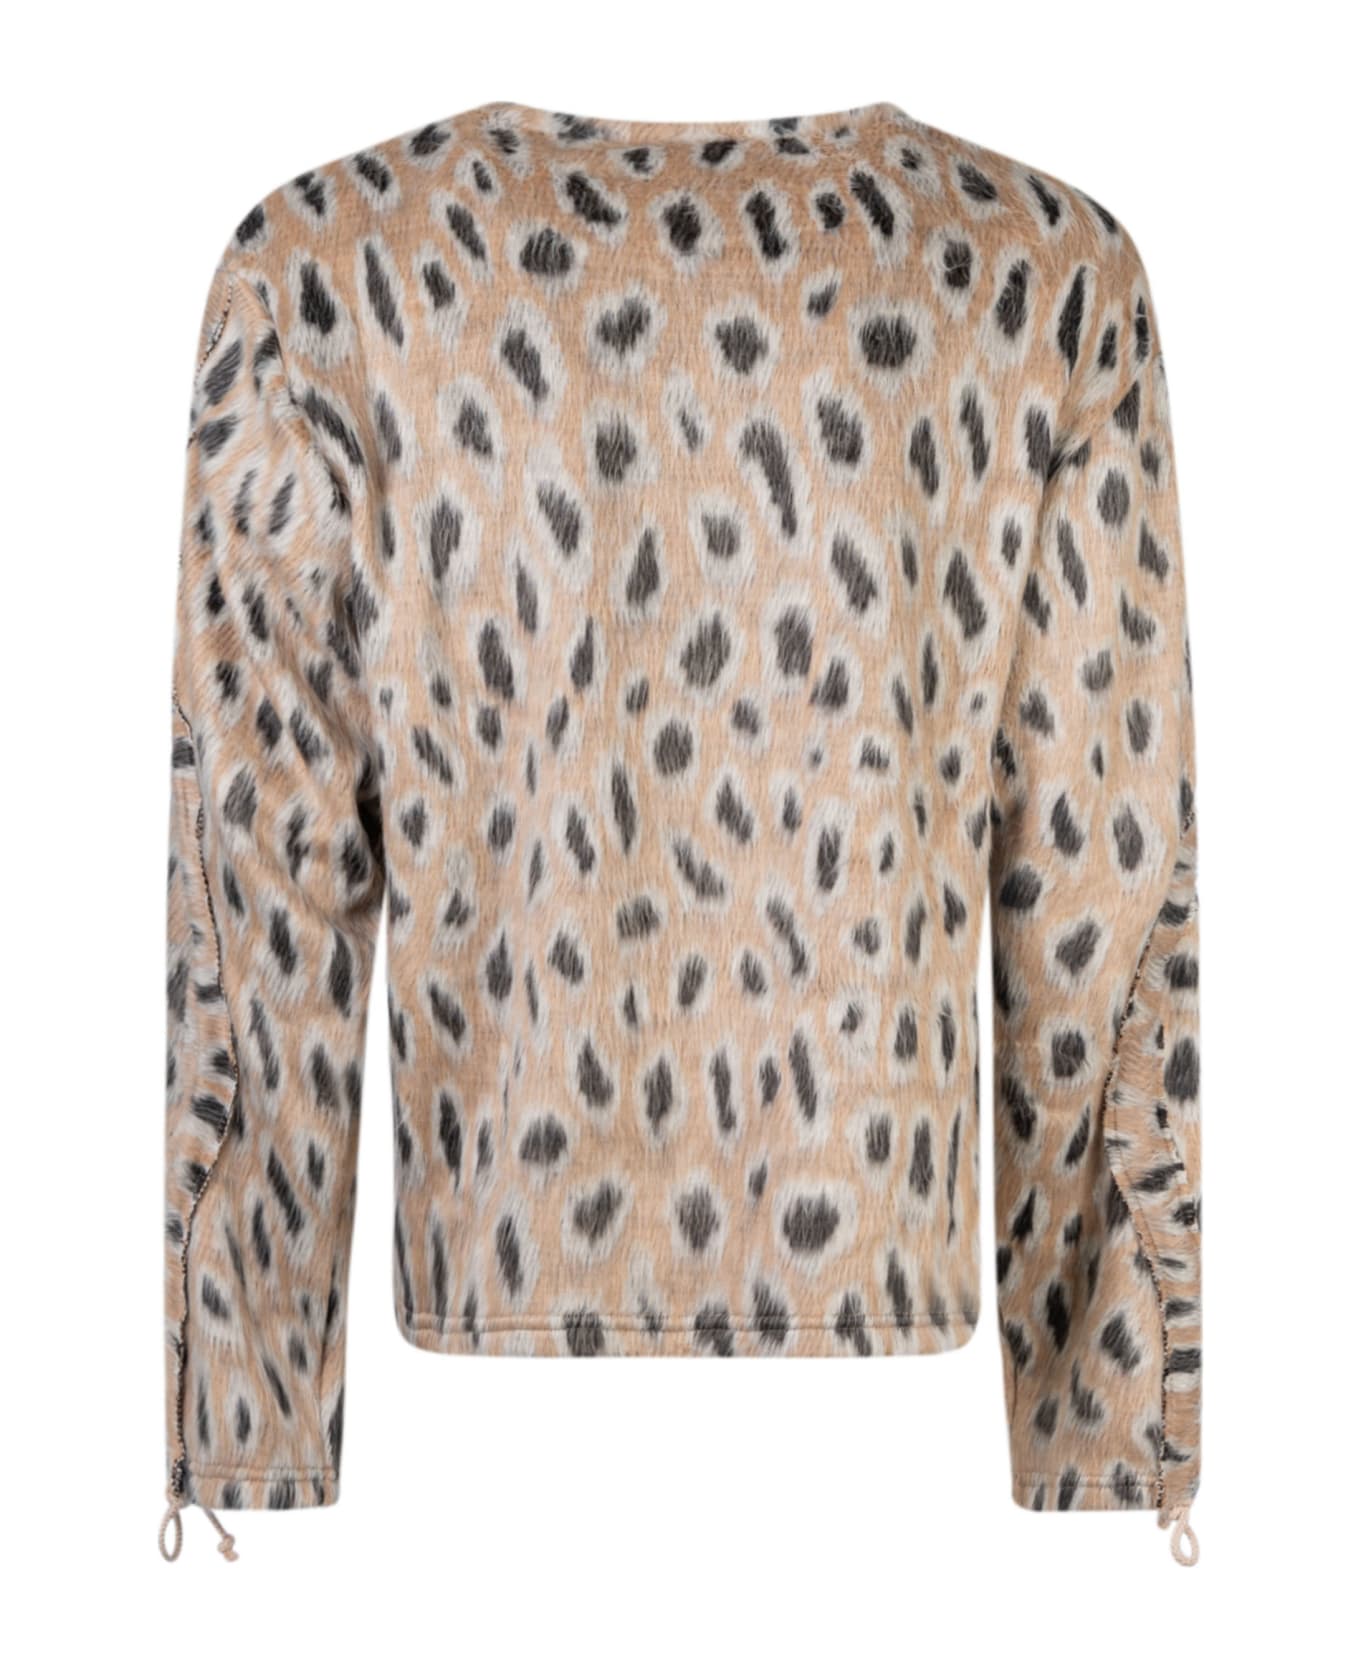 Bluemarble Furry Leopard Sweater - Furry Leopard